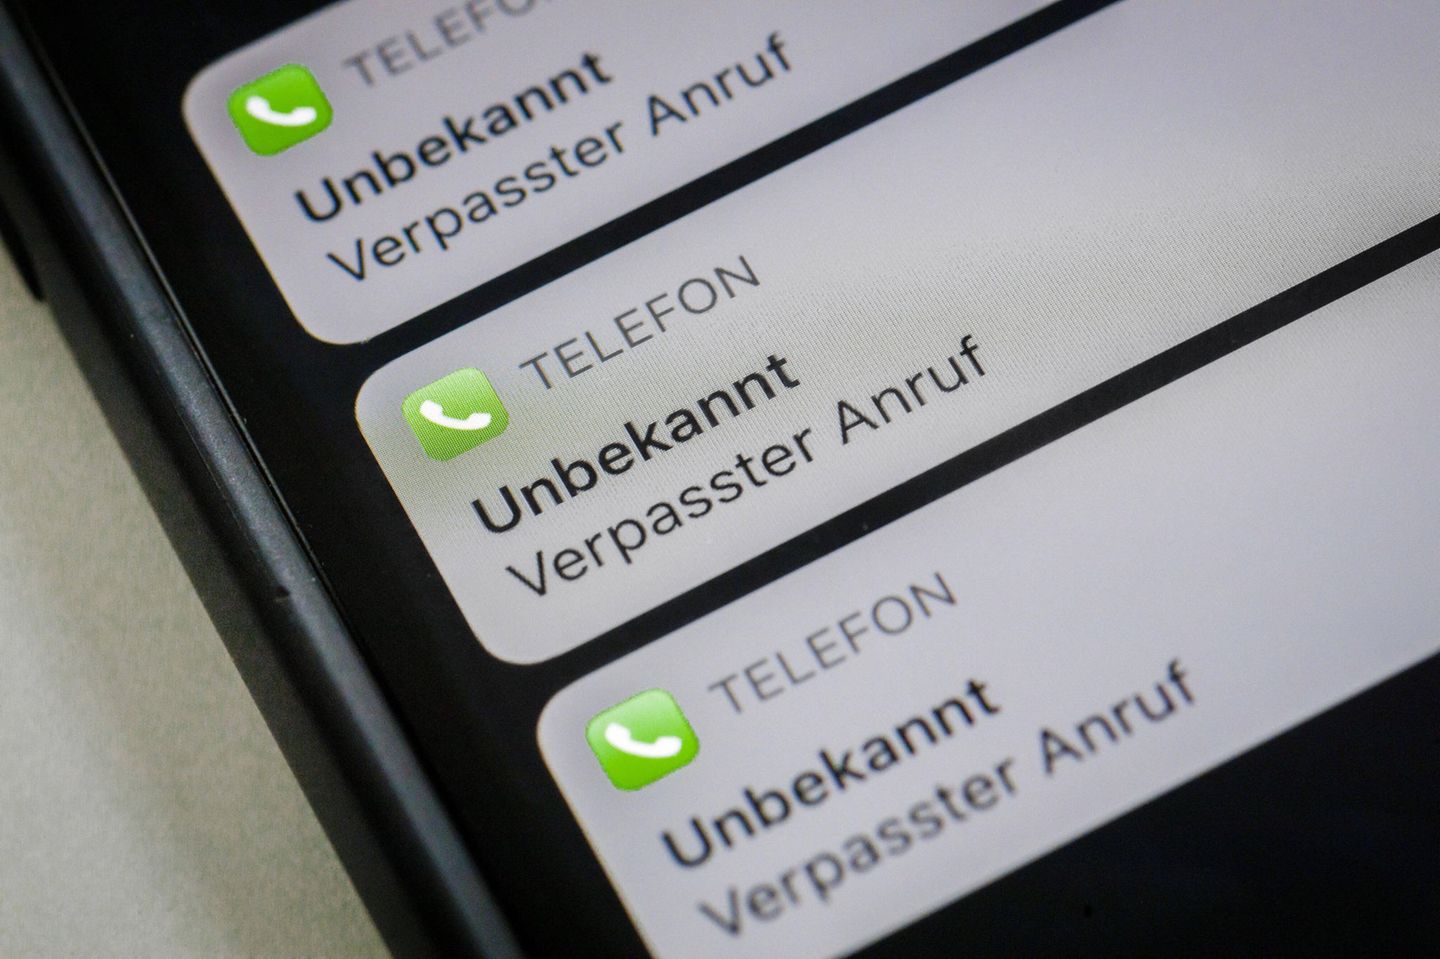 La pantalla del teléfono móvil muestra las llamadas perdidas de un número desconocido.